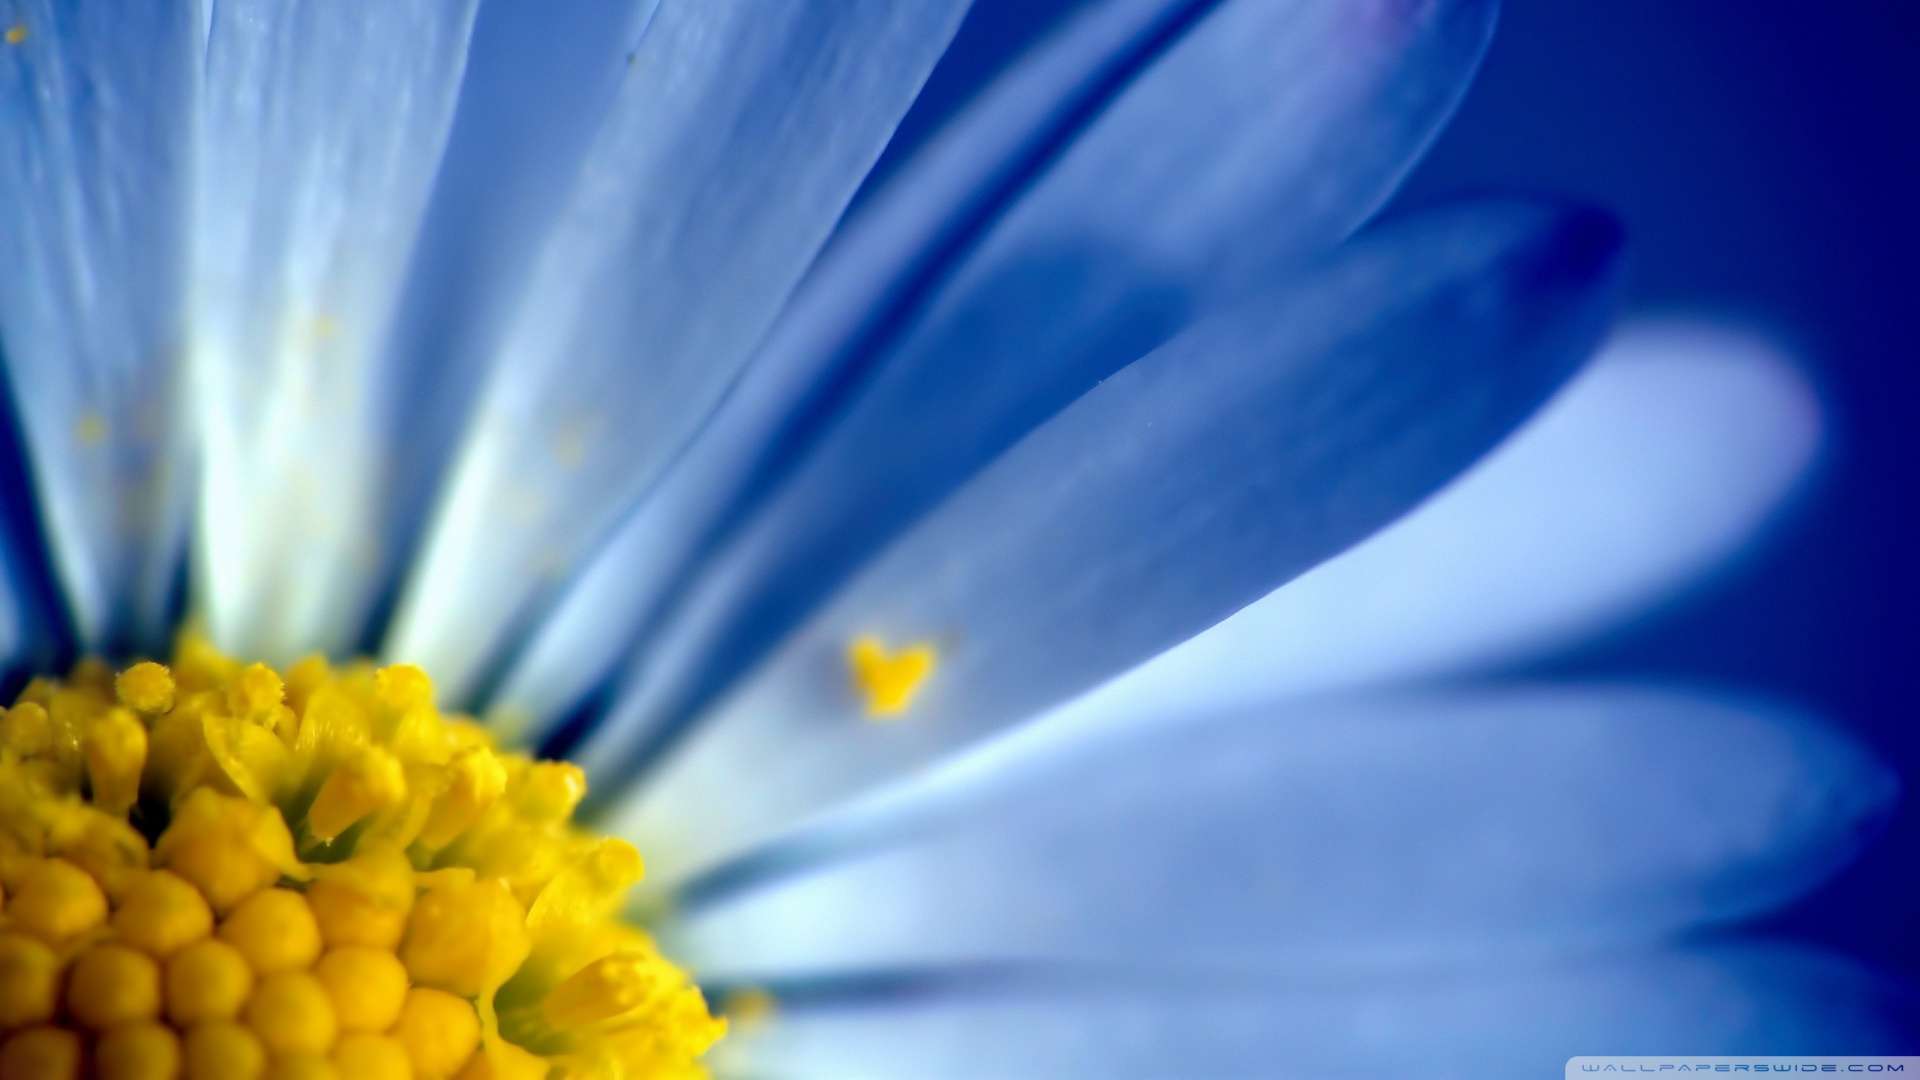 Blue Petals Wallpaper 1080p HD Is A Fantastic For Your Pc